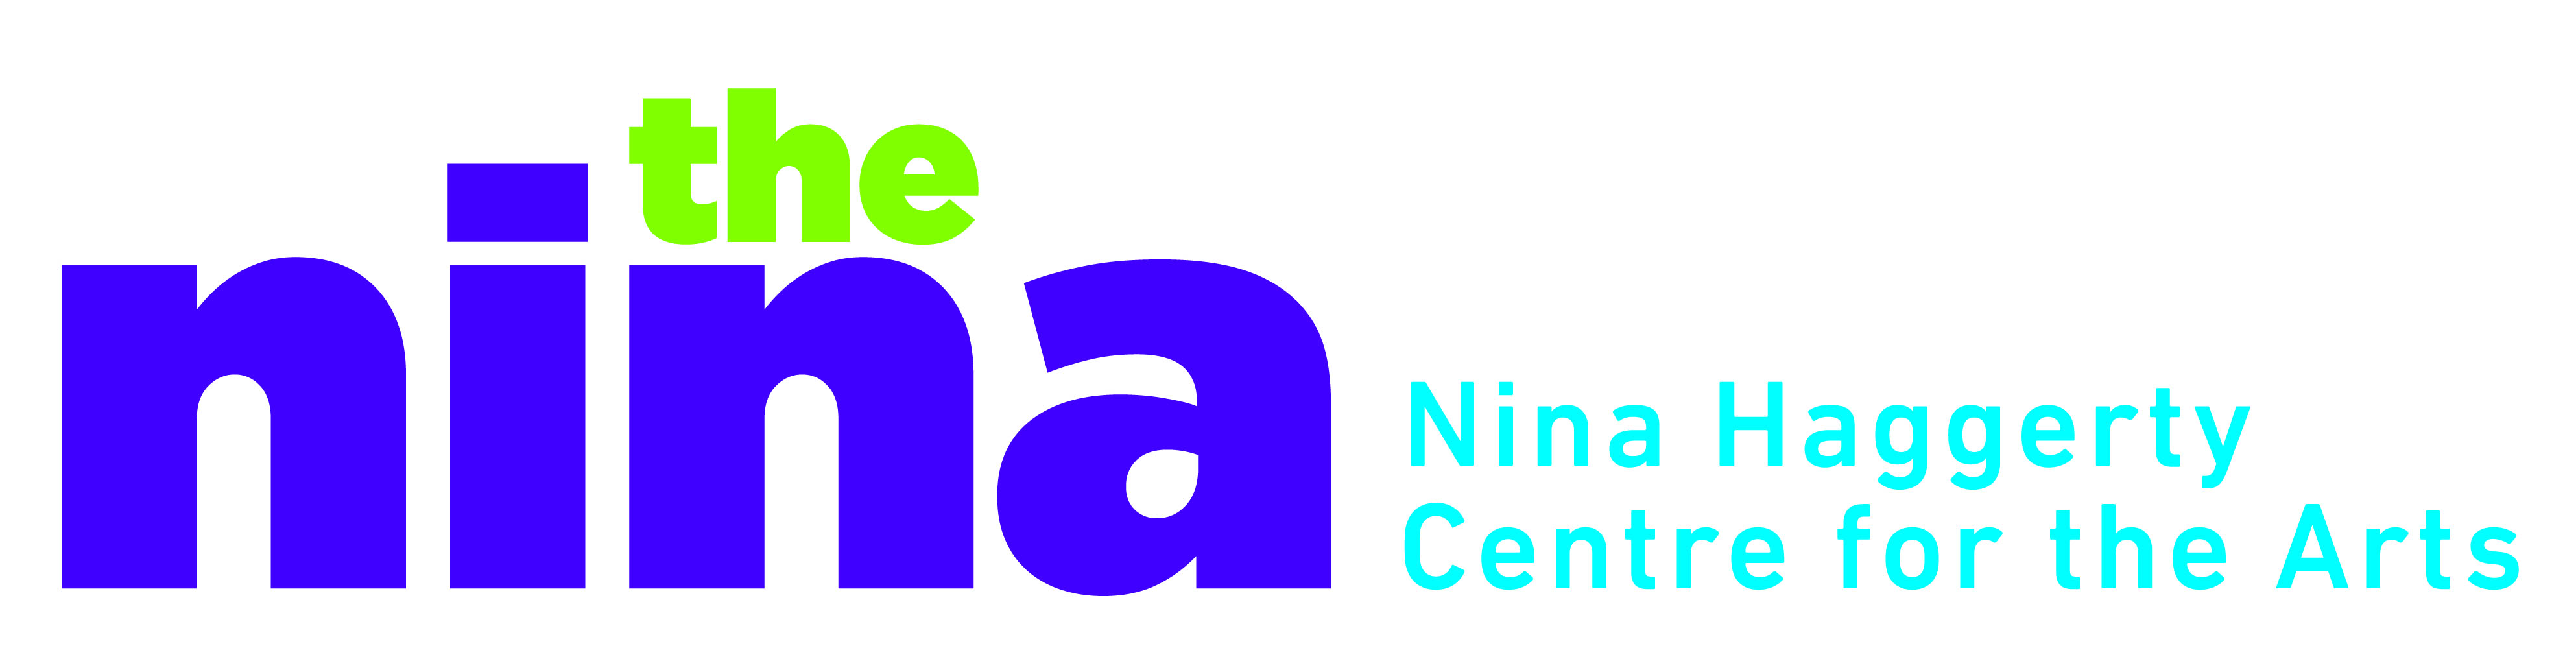 Nina Haggerty Centre for the Arts logo